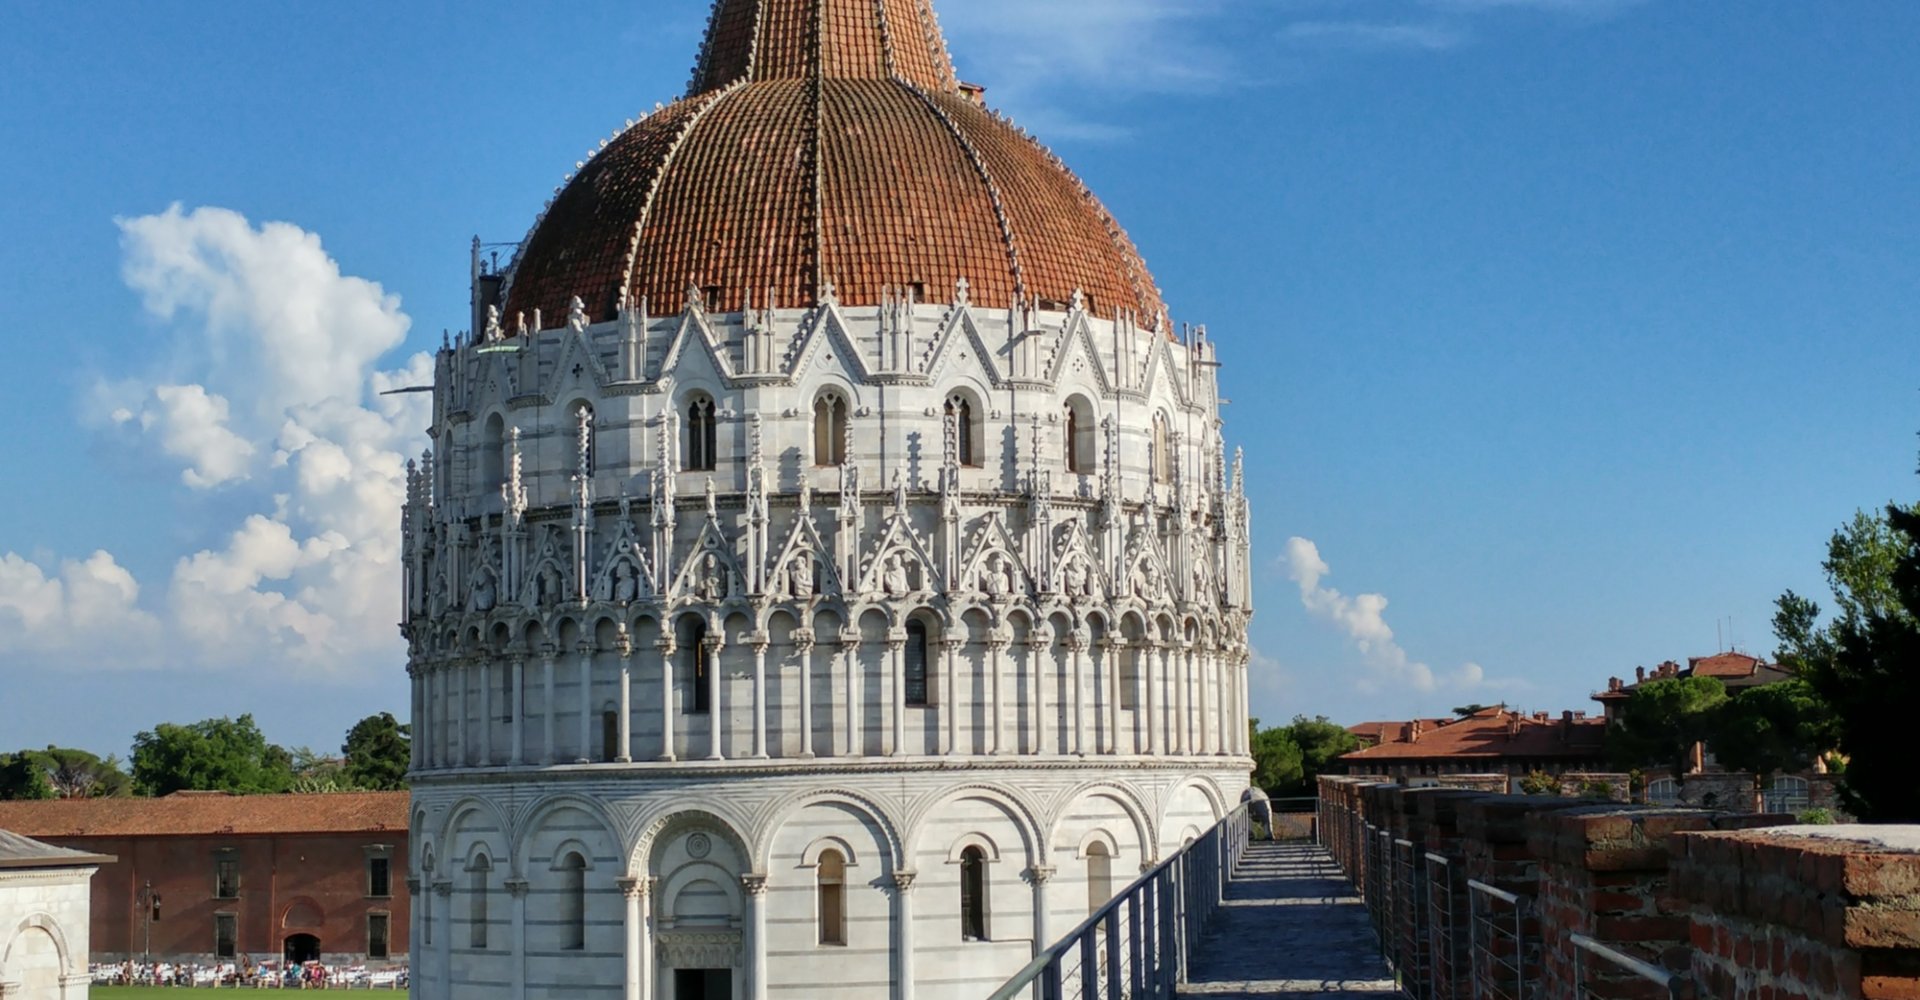 Panorama dalle mura di Pisa